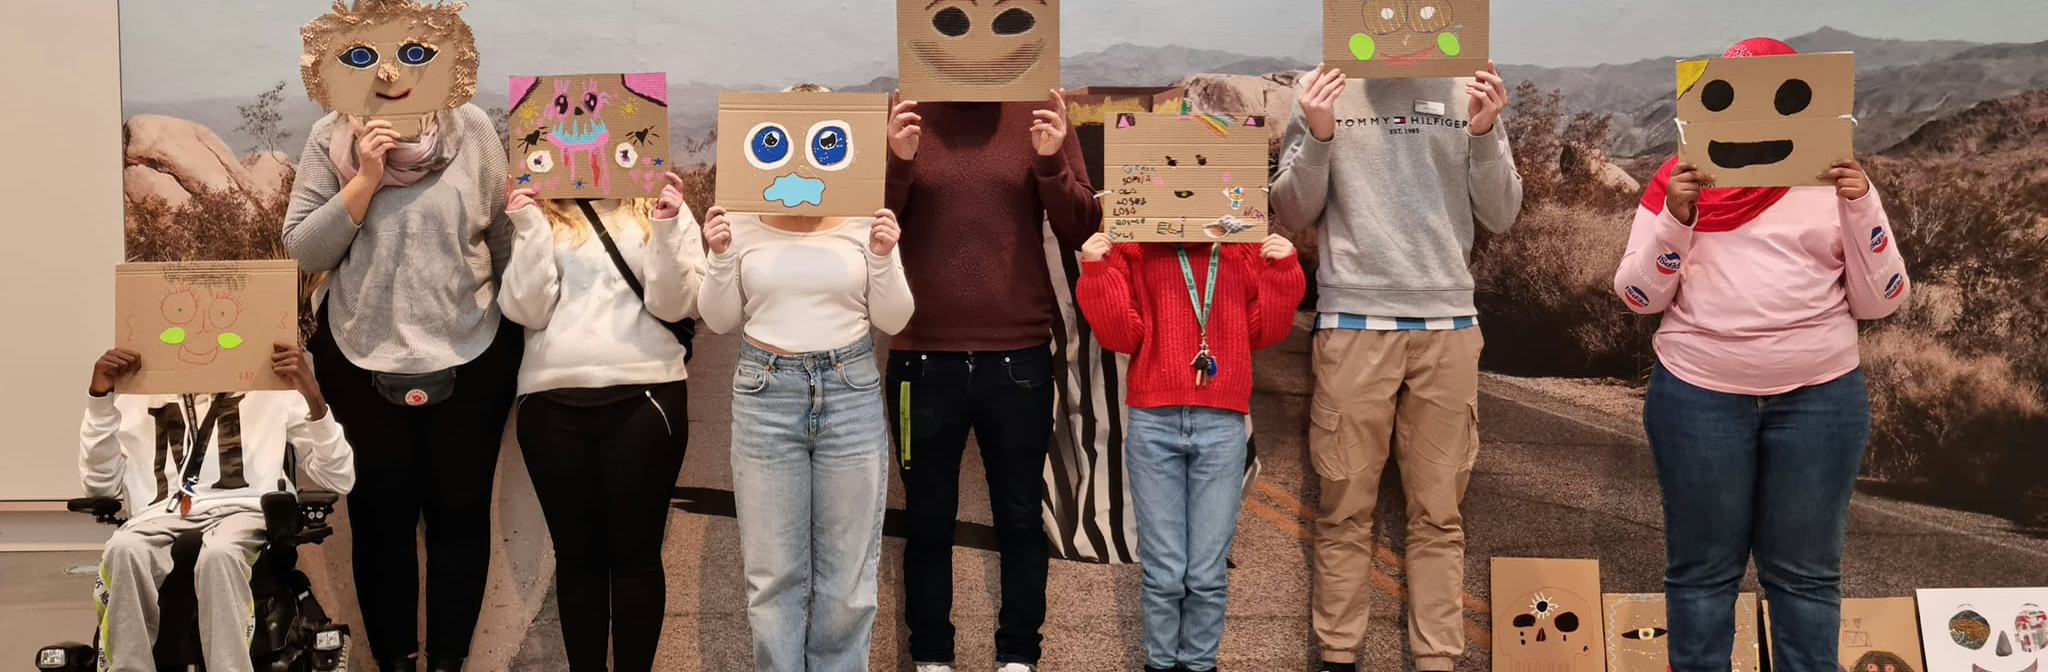 En grupp står och håller fram masker framför ansiktet som de själva skapat i ateljén